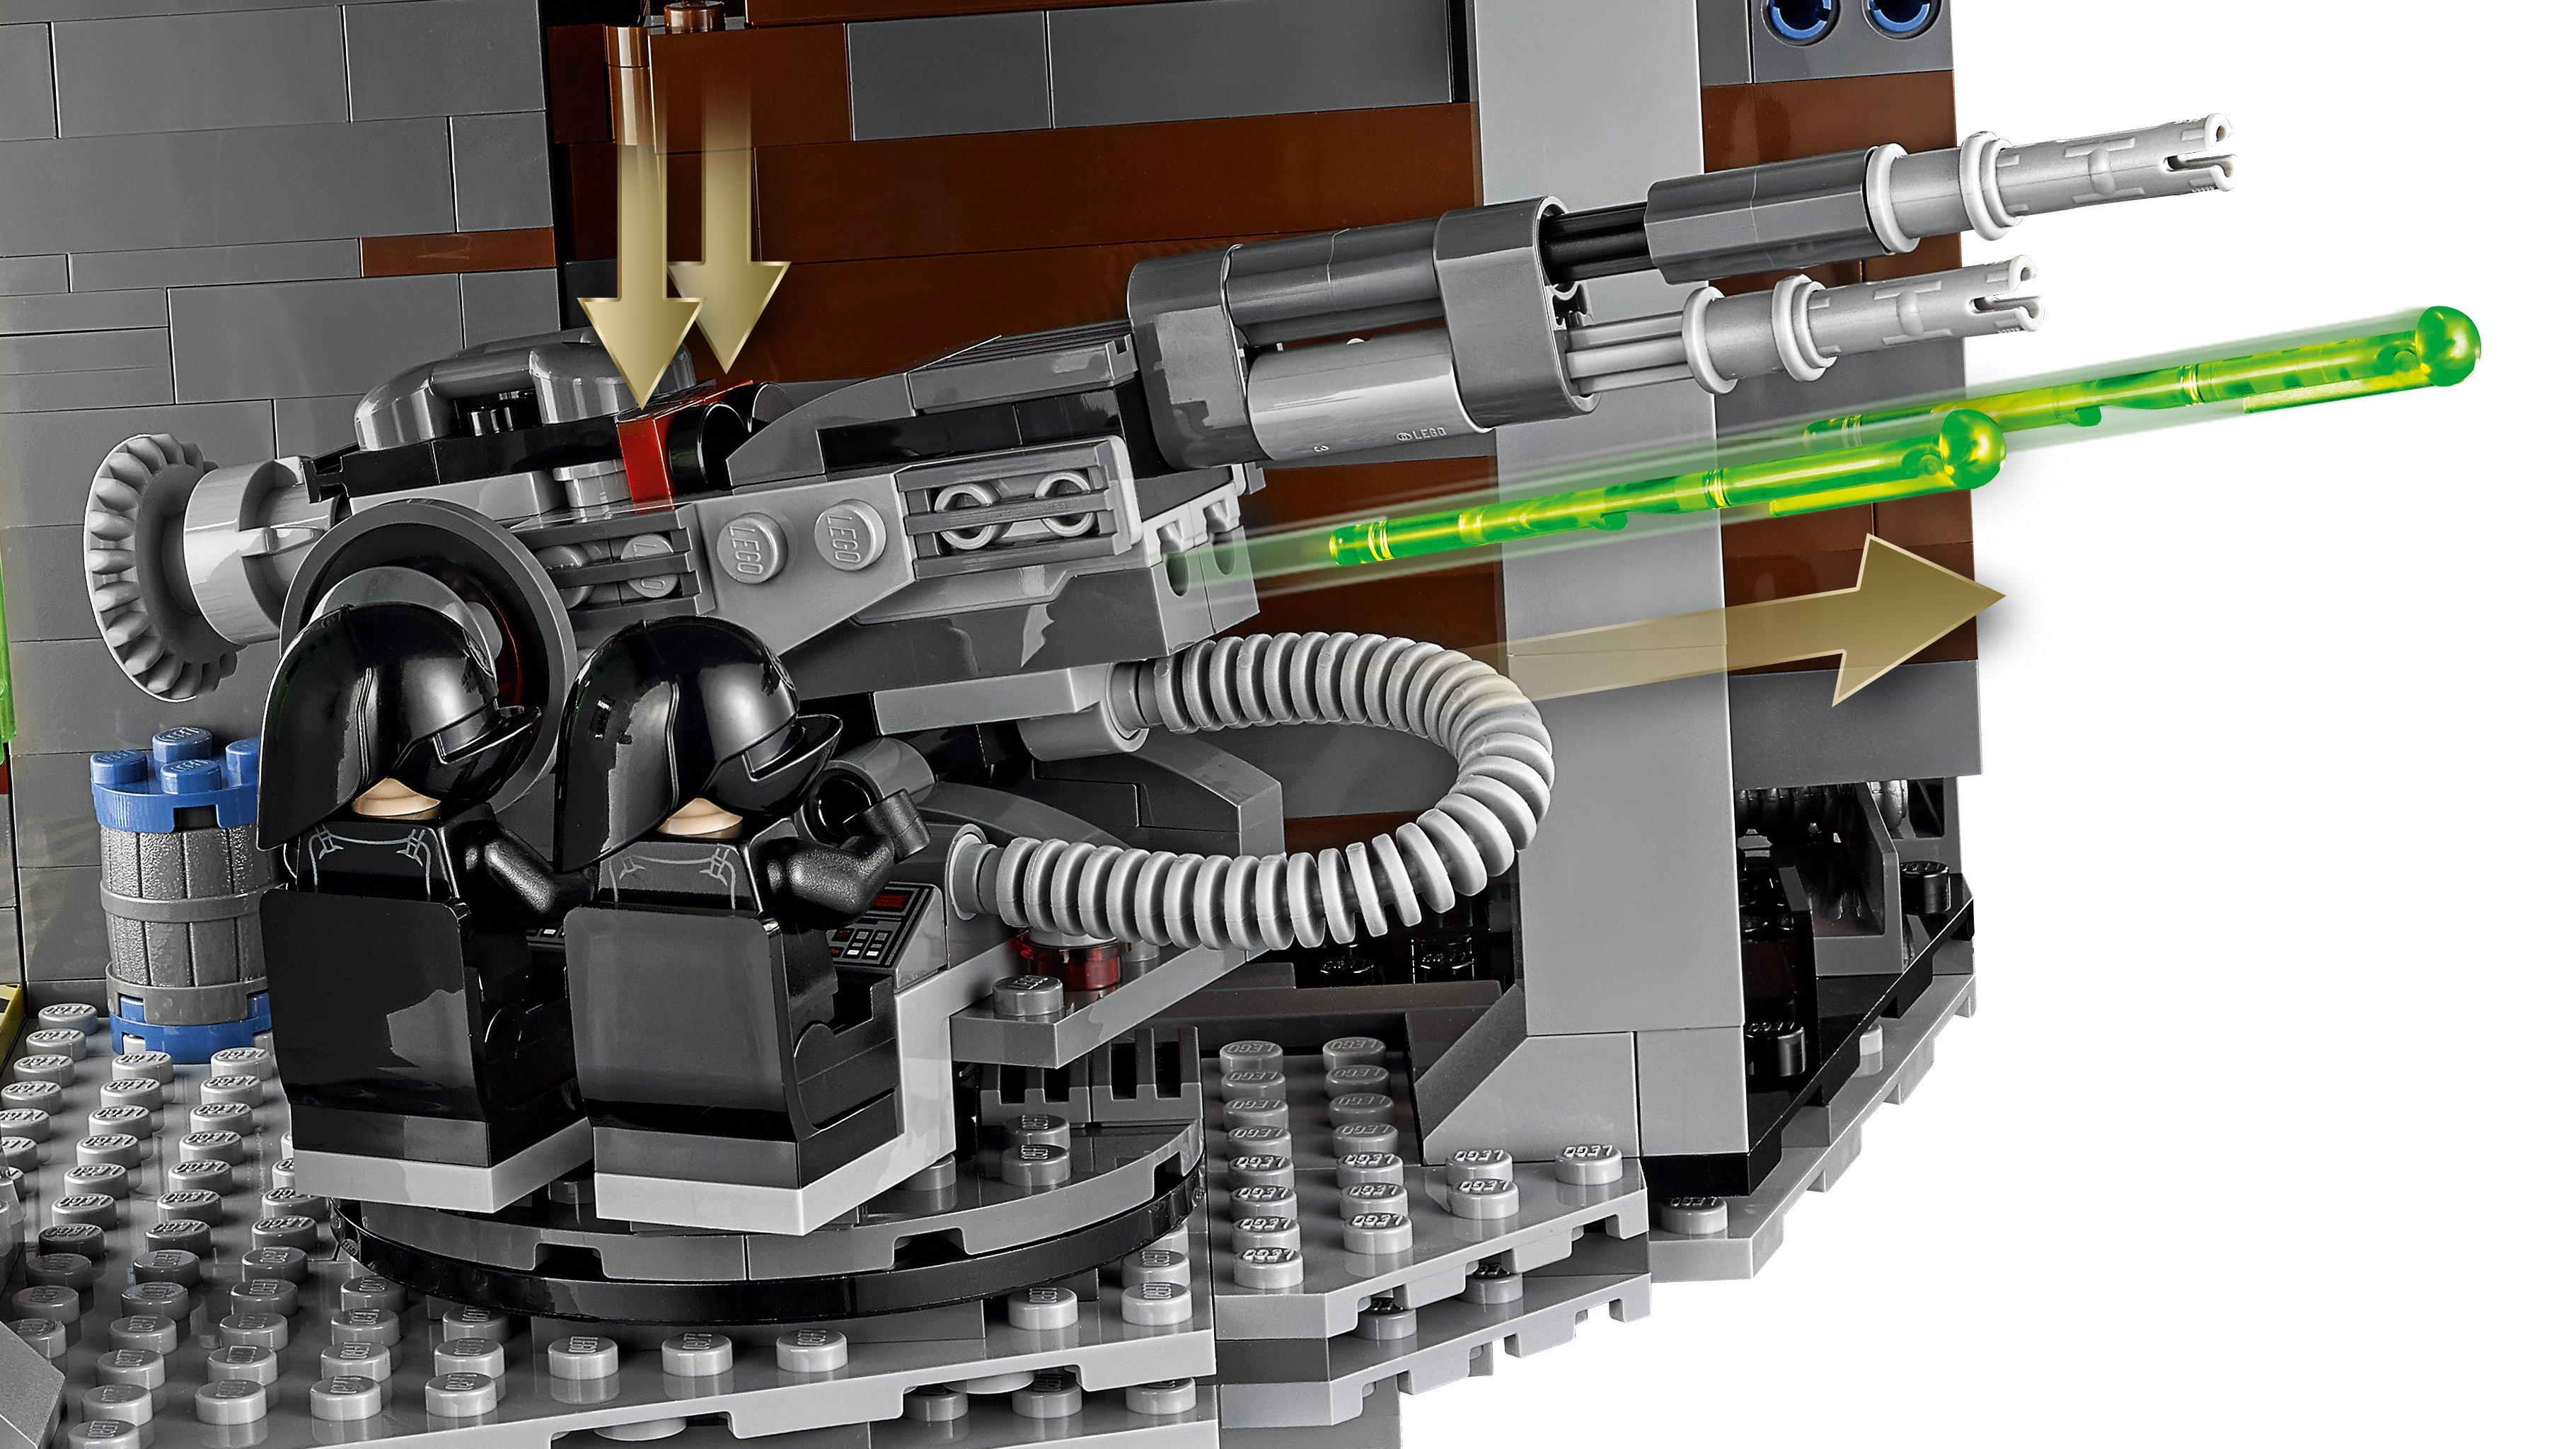 LEGO®  75159 Death Star 